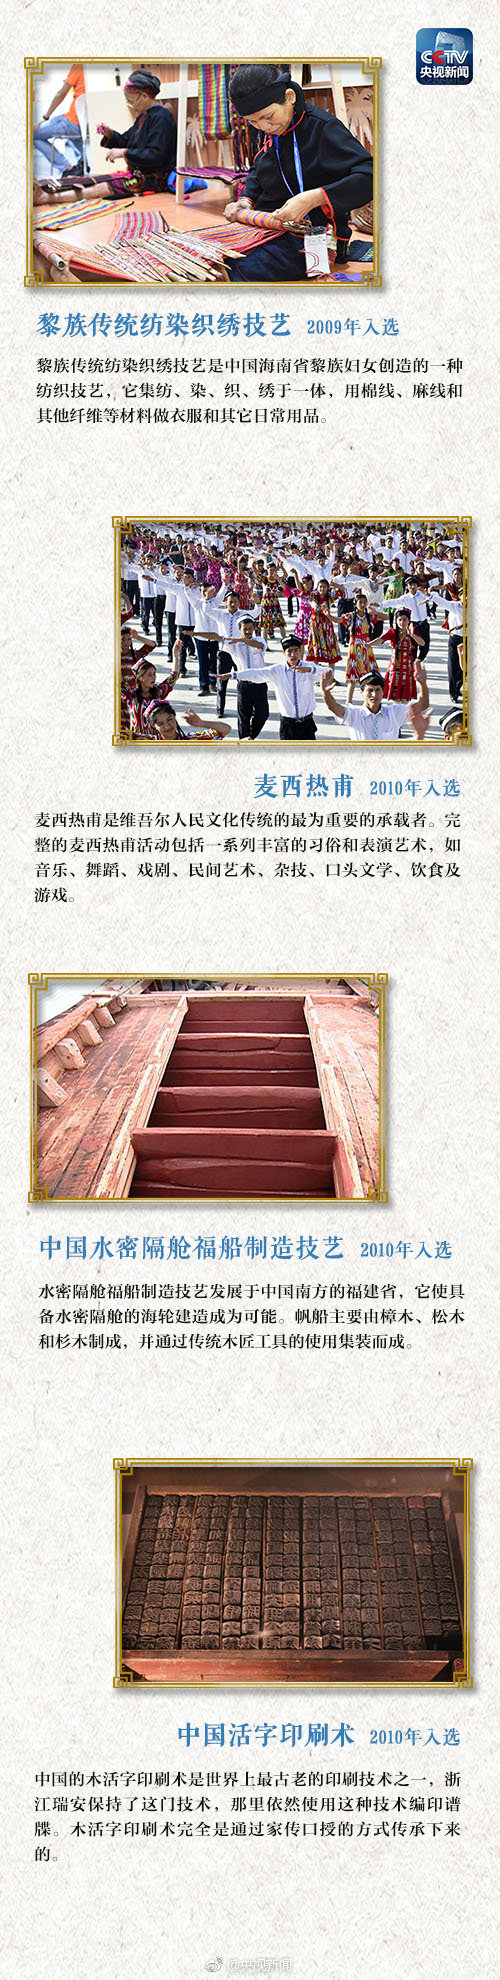 中国世界级非物质文化遗产全名录(2018年11月28日最新)